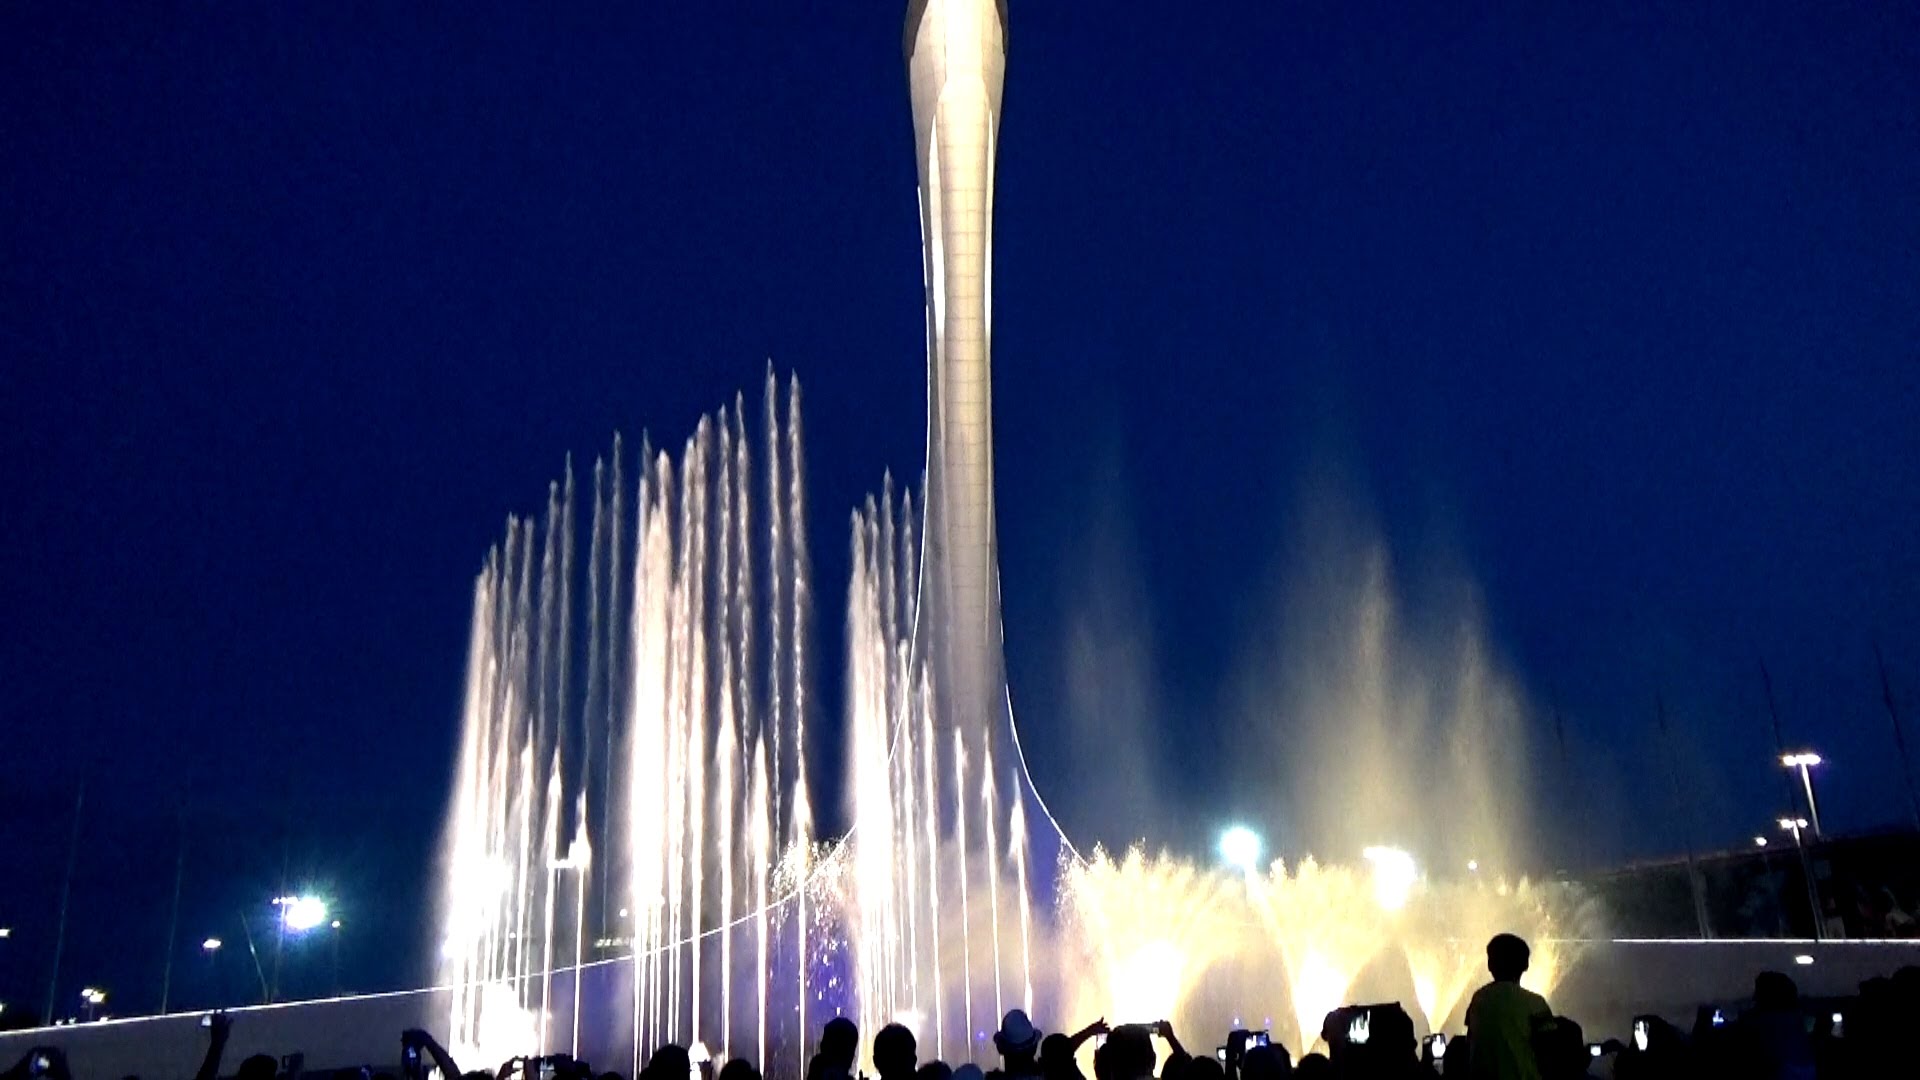 Олимпийский парк сегодня поющие фонтаны. Фонтан Сочи Олимпийский парк. Олимпийский парк Поющие фонтаны. Сочи парк Поющие фонтаны. Фонтан в Адлере Олимпийский.